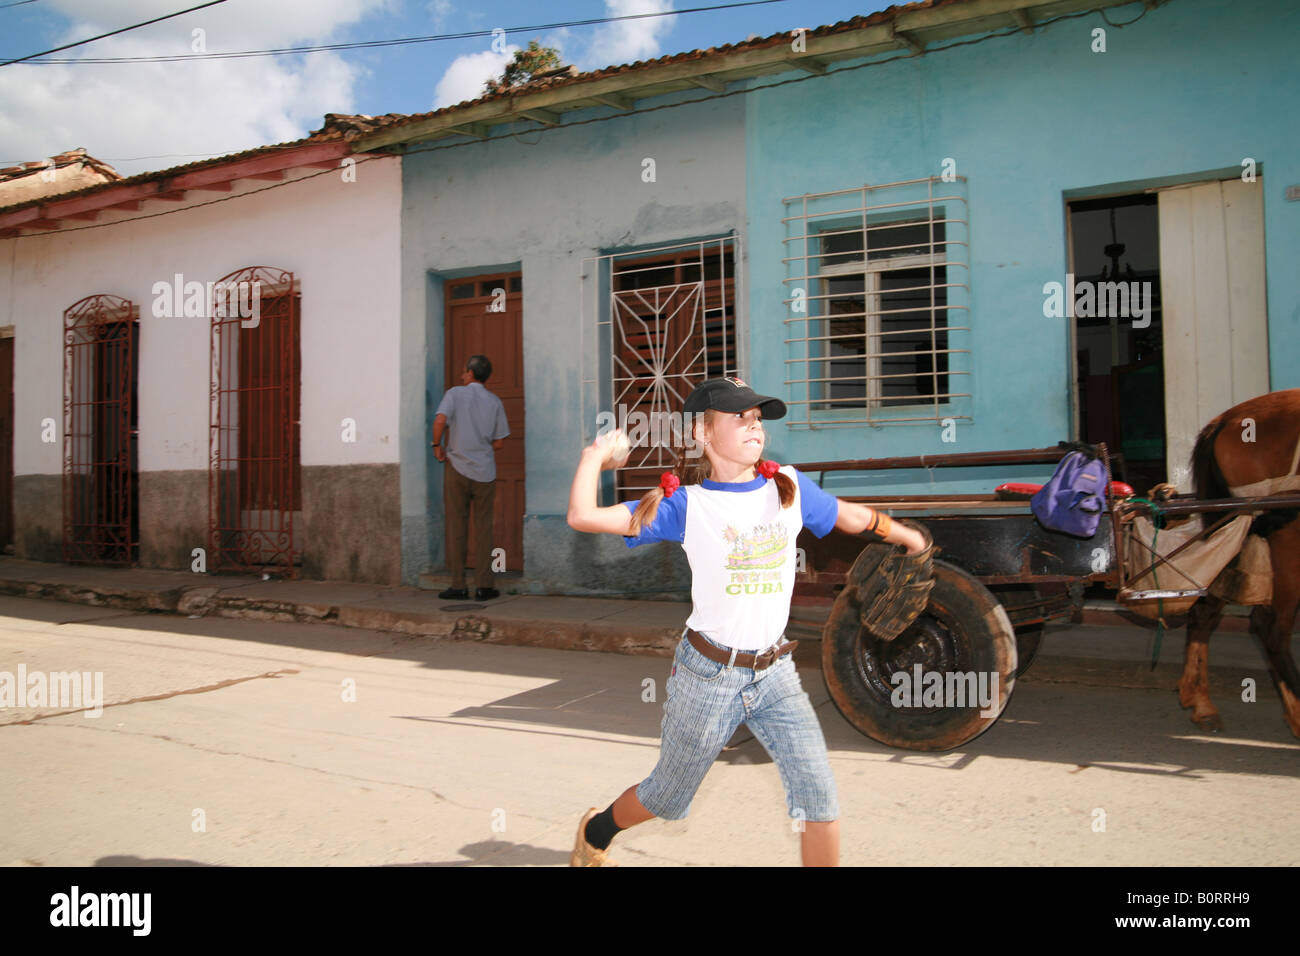 Junge Baseball zu spielen, auf einer Straße in Trinidad, Provinz Sancti Spíritus, Kuba, Lateinamerika Stockfoto